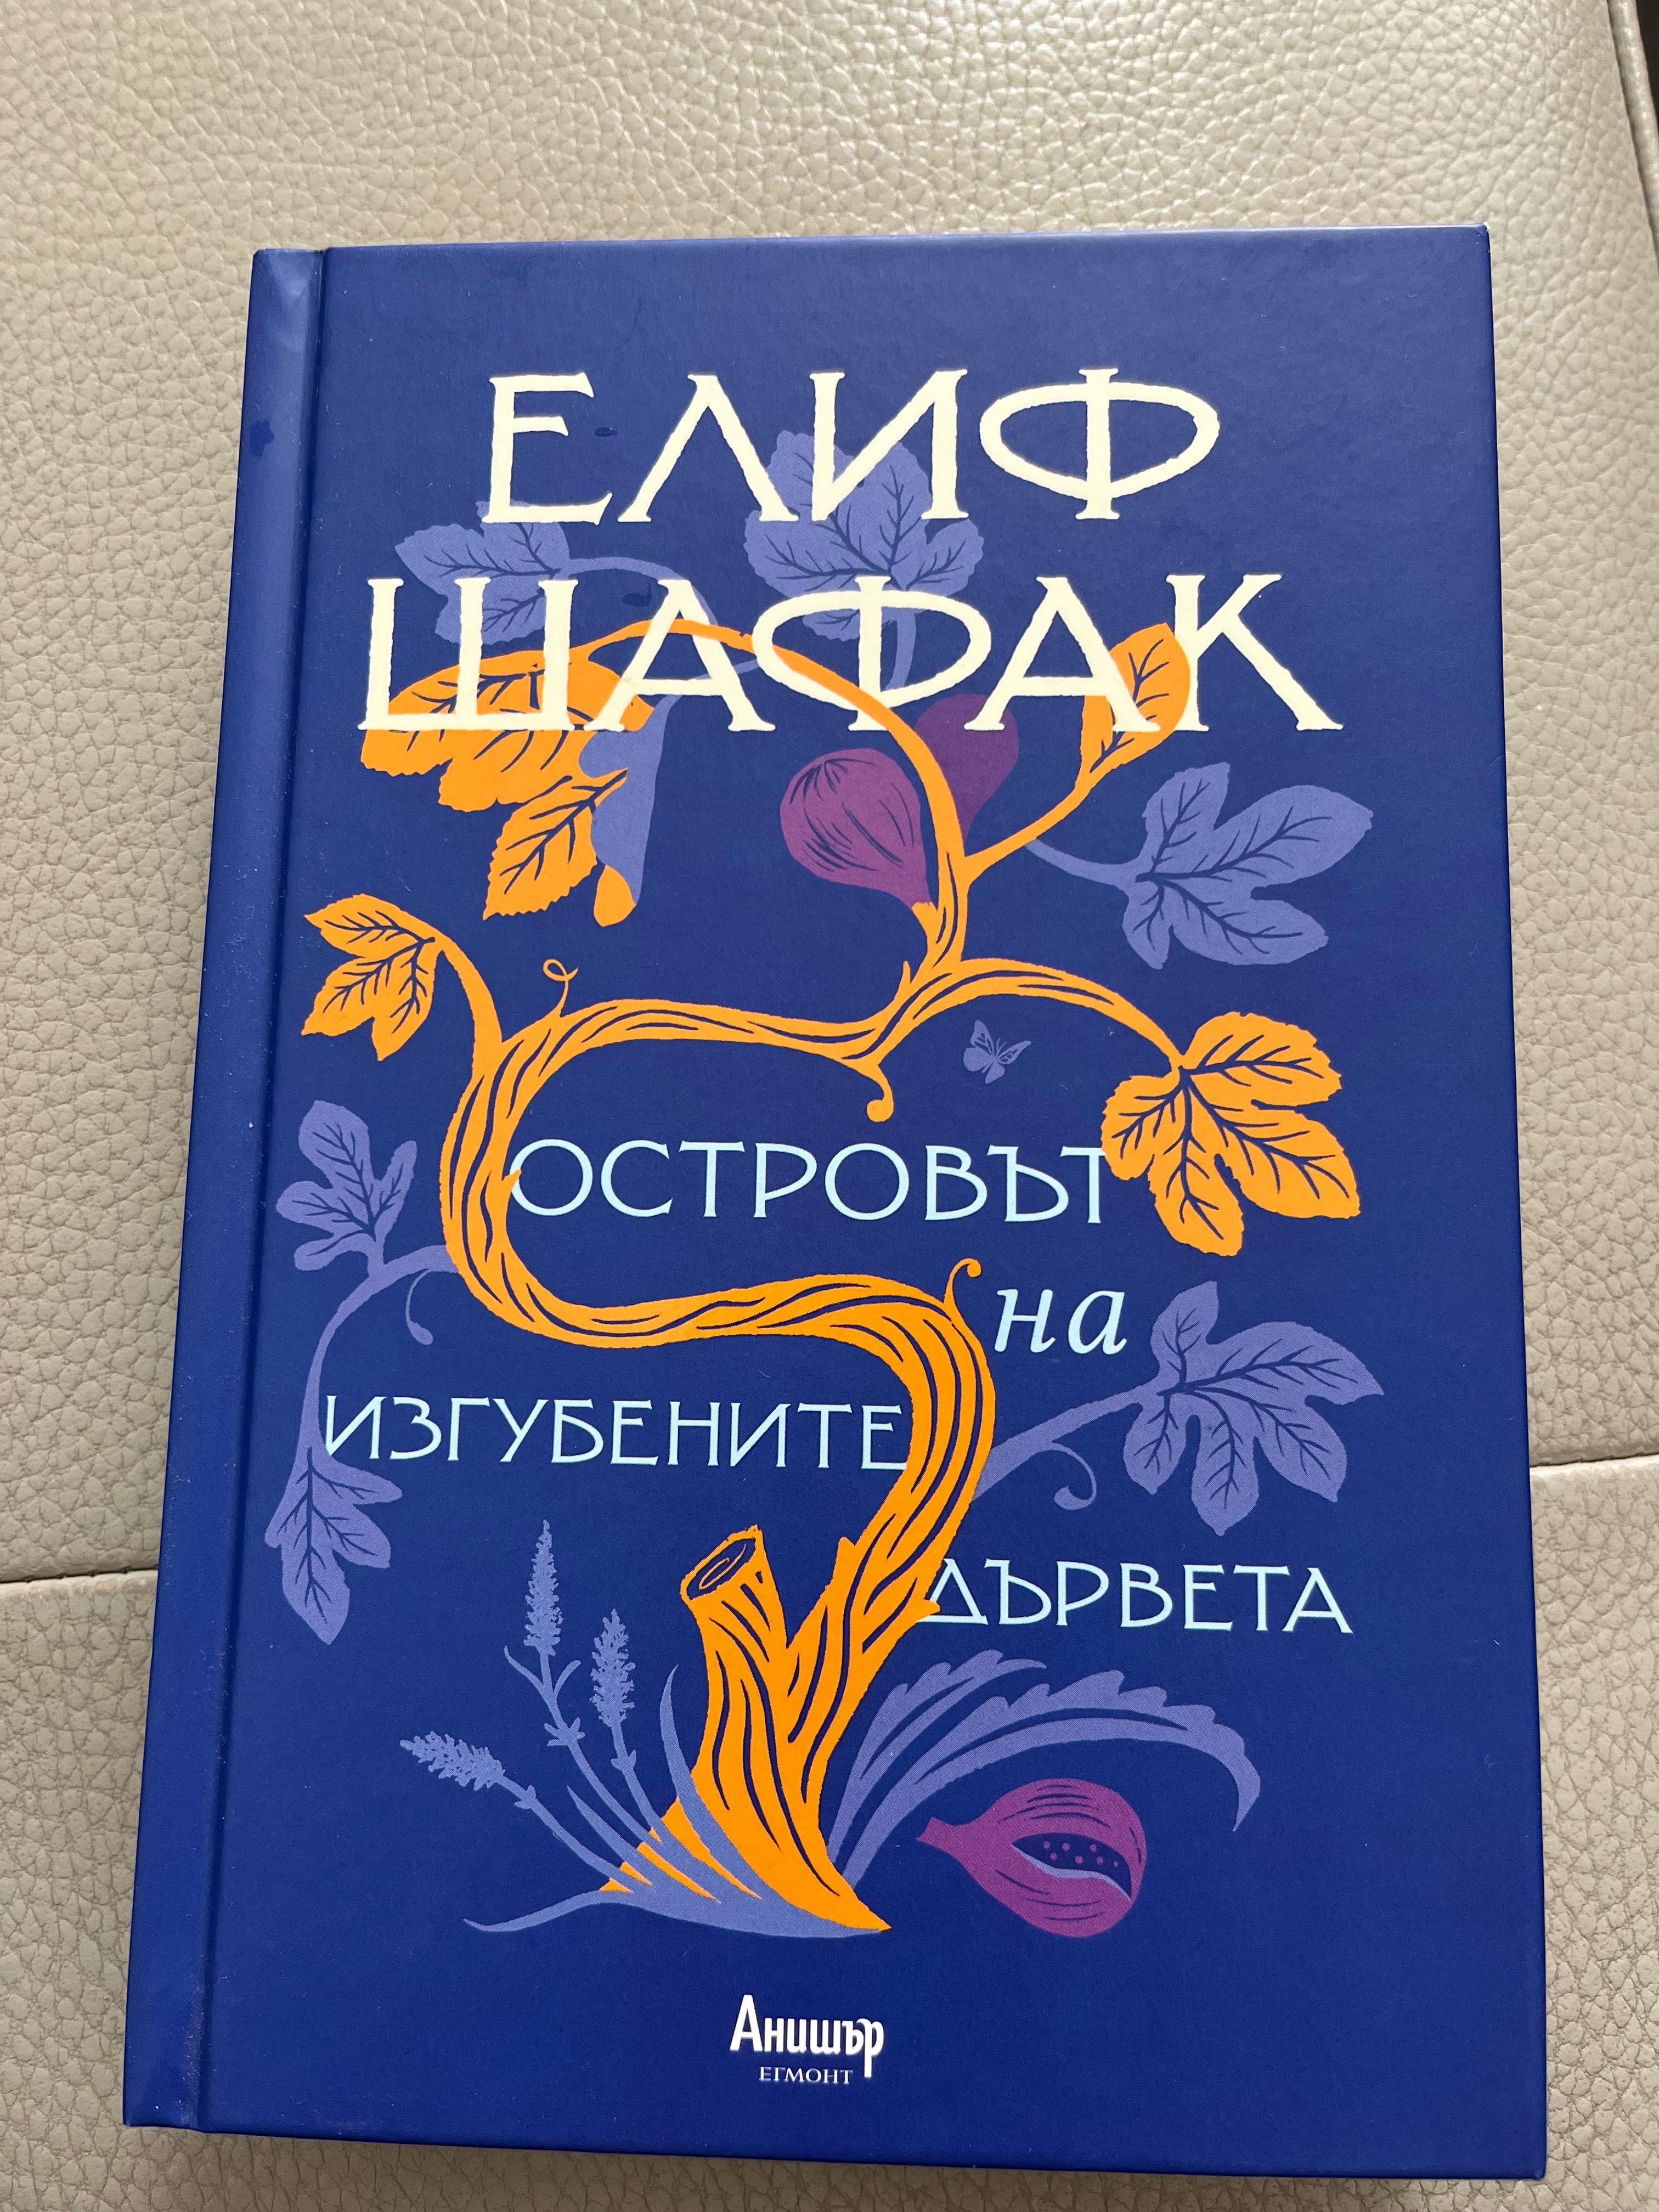 Книги на Елиф Шафак и Людмила Филипова